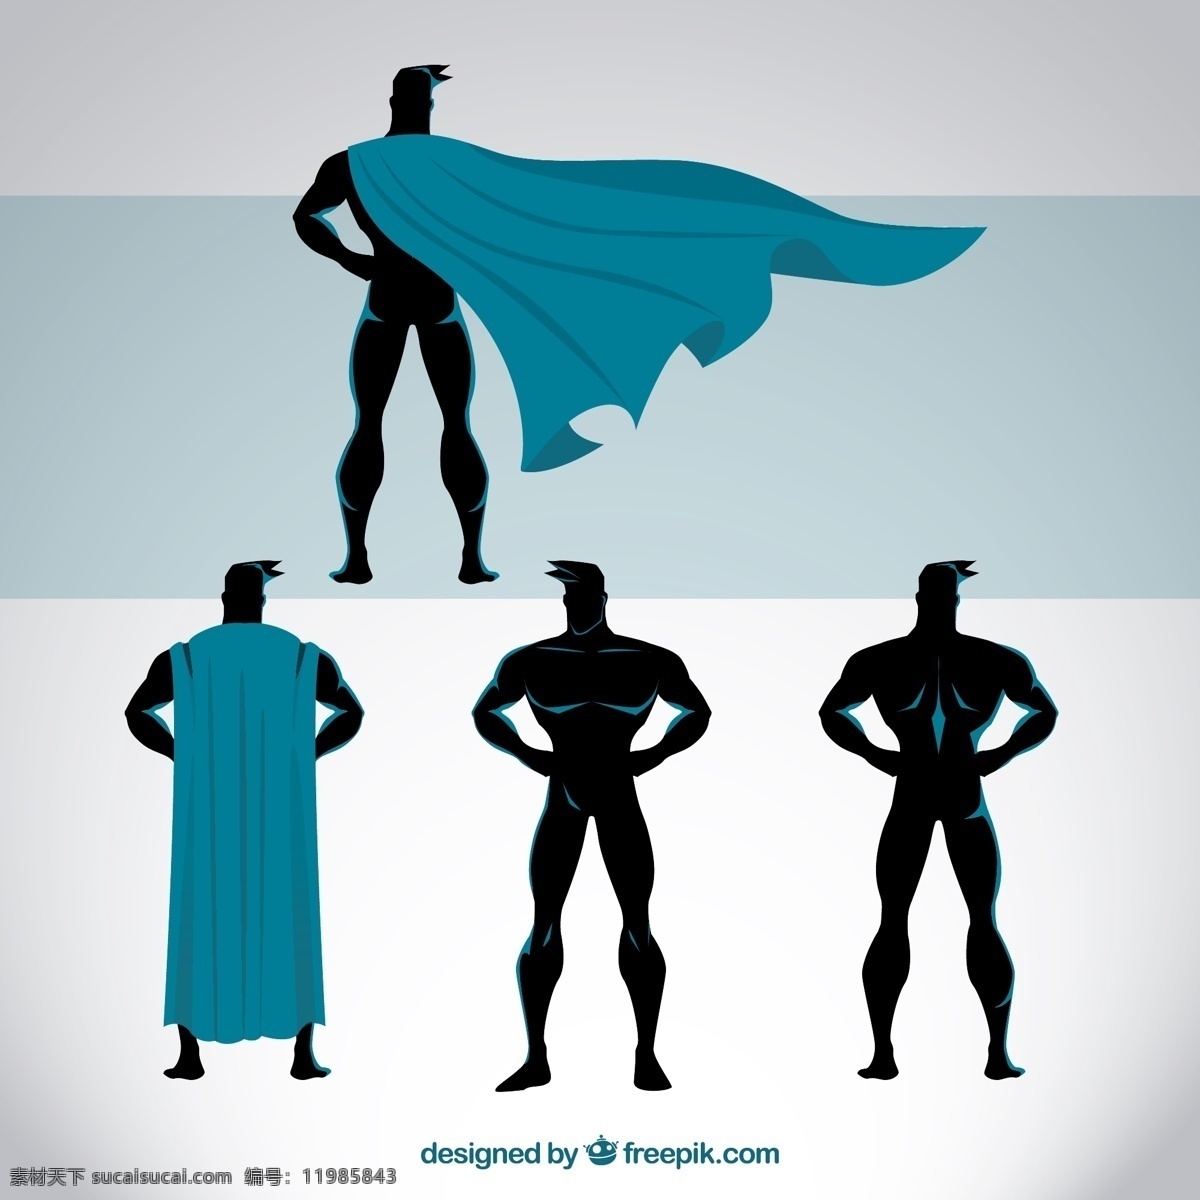 超级英雄姿势 漫画 字符 超级英雄 英雄 正义 力量 保护 服装 海角 姿势 功能强大 体式 图标 高清 源文件